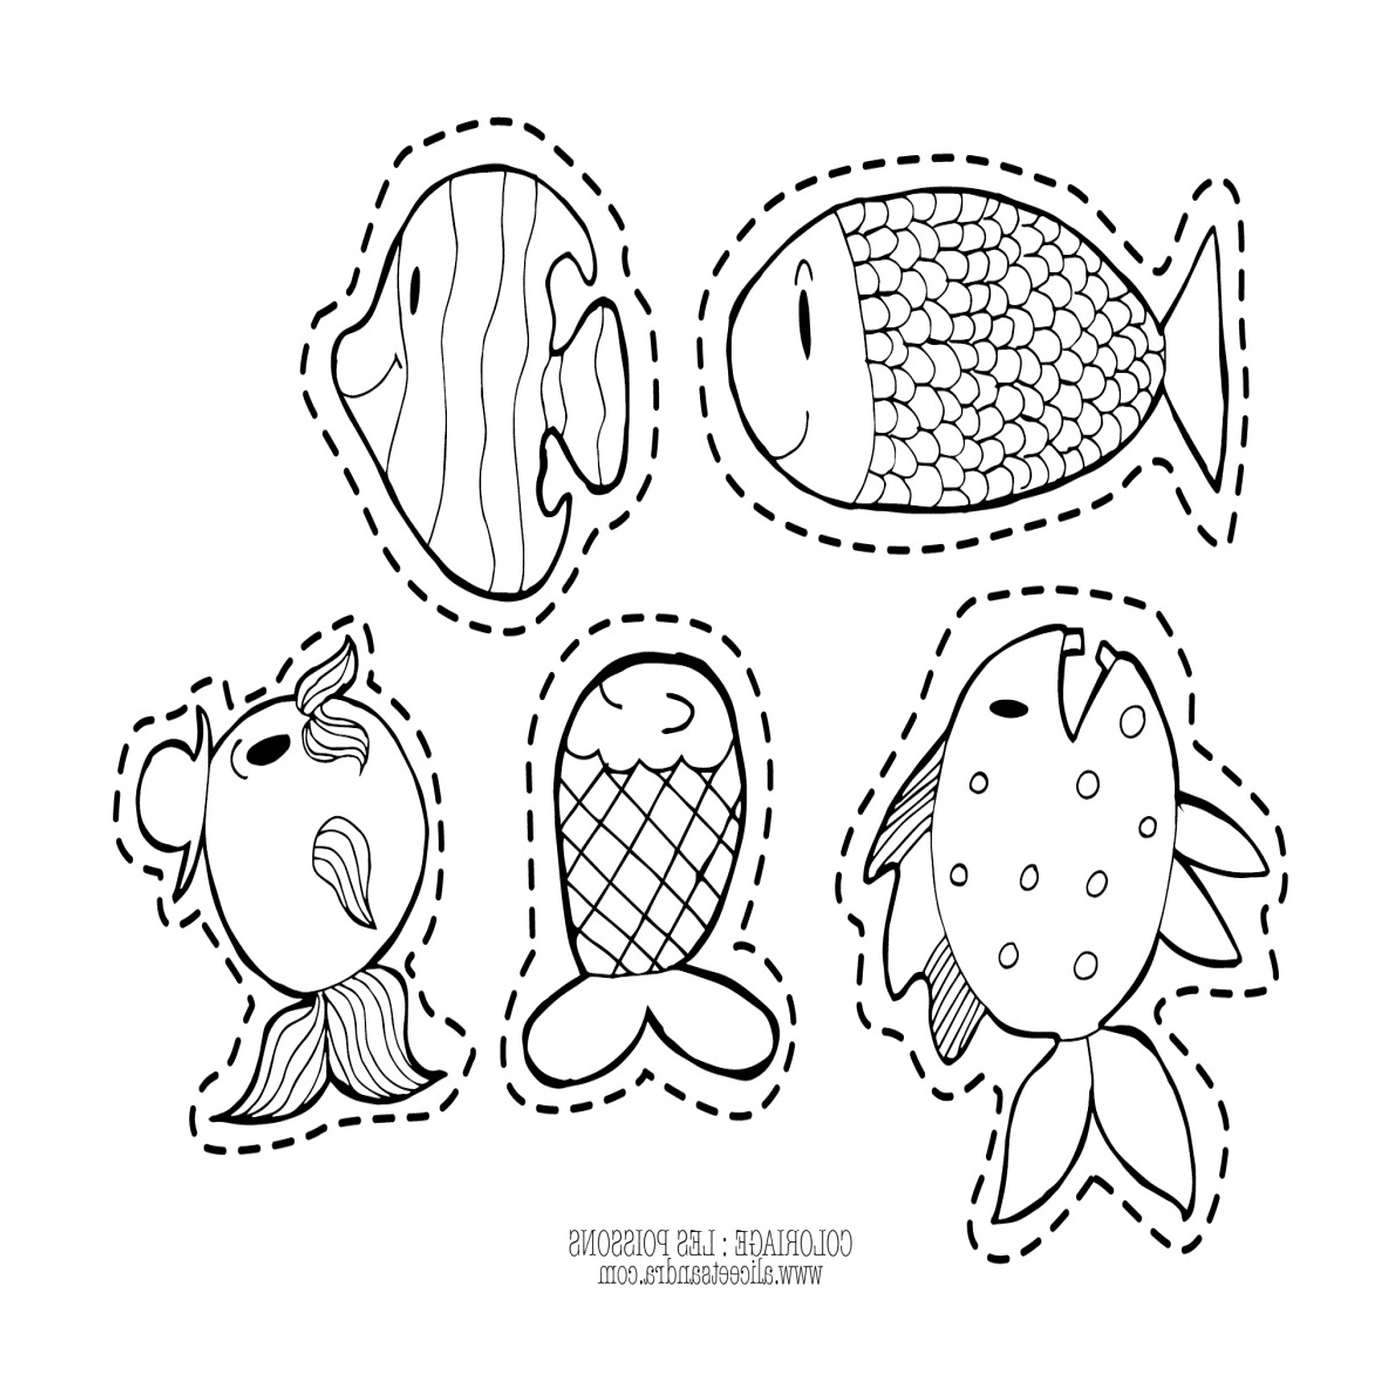  Cinque pesci disegnati su una pagina 